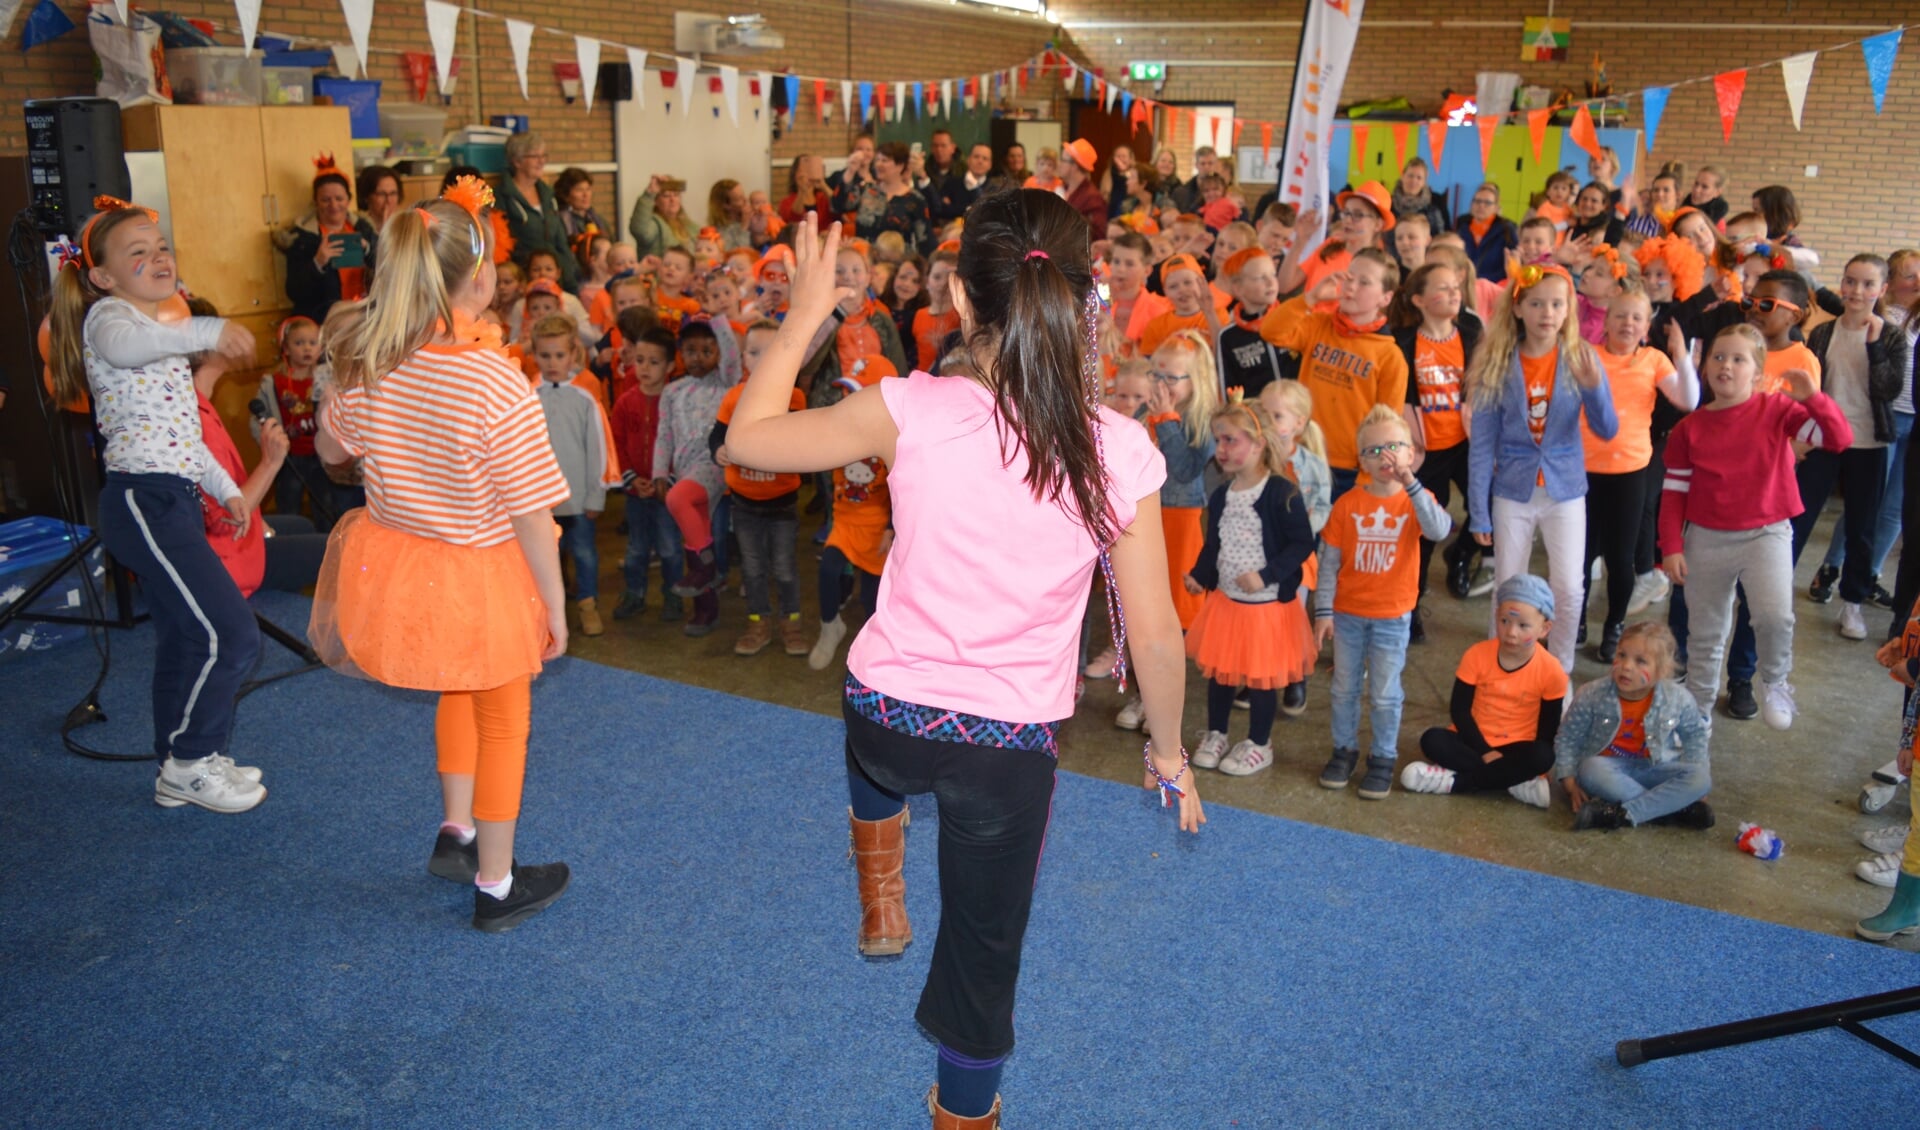 De Koningsspelen begonnen op basisschool Kleurrijk met het Koningslied. (foto en tekst: Nicole Lamers)